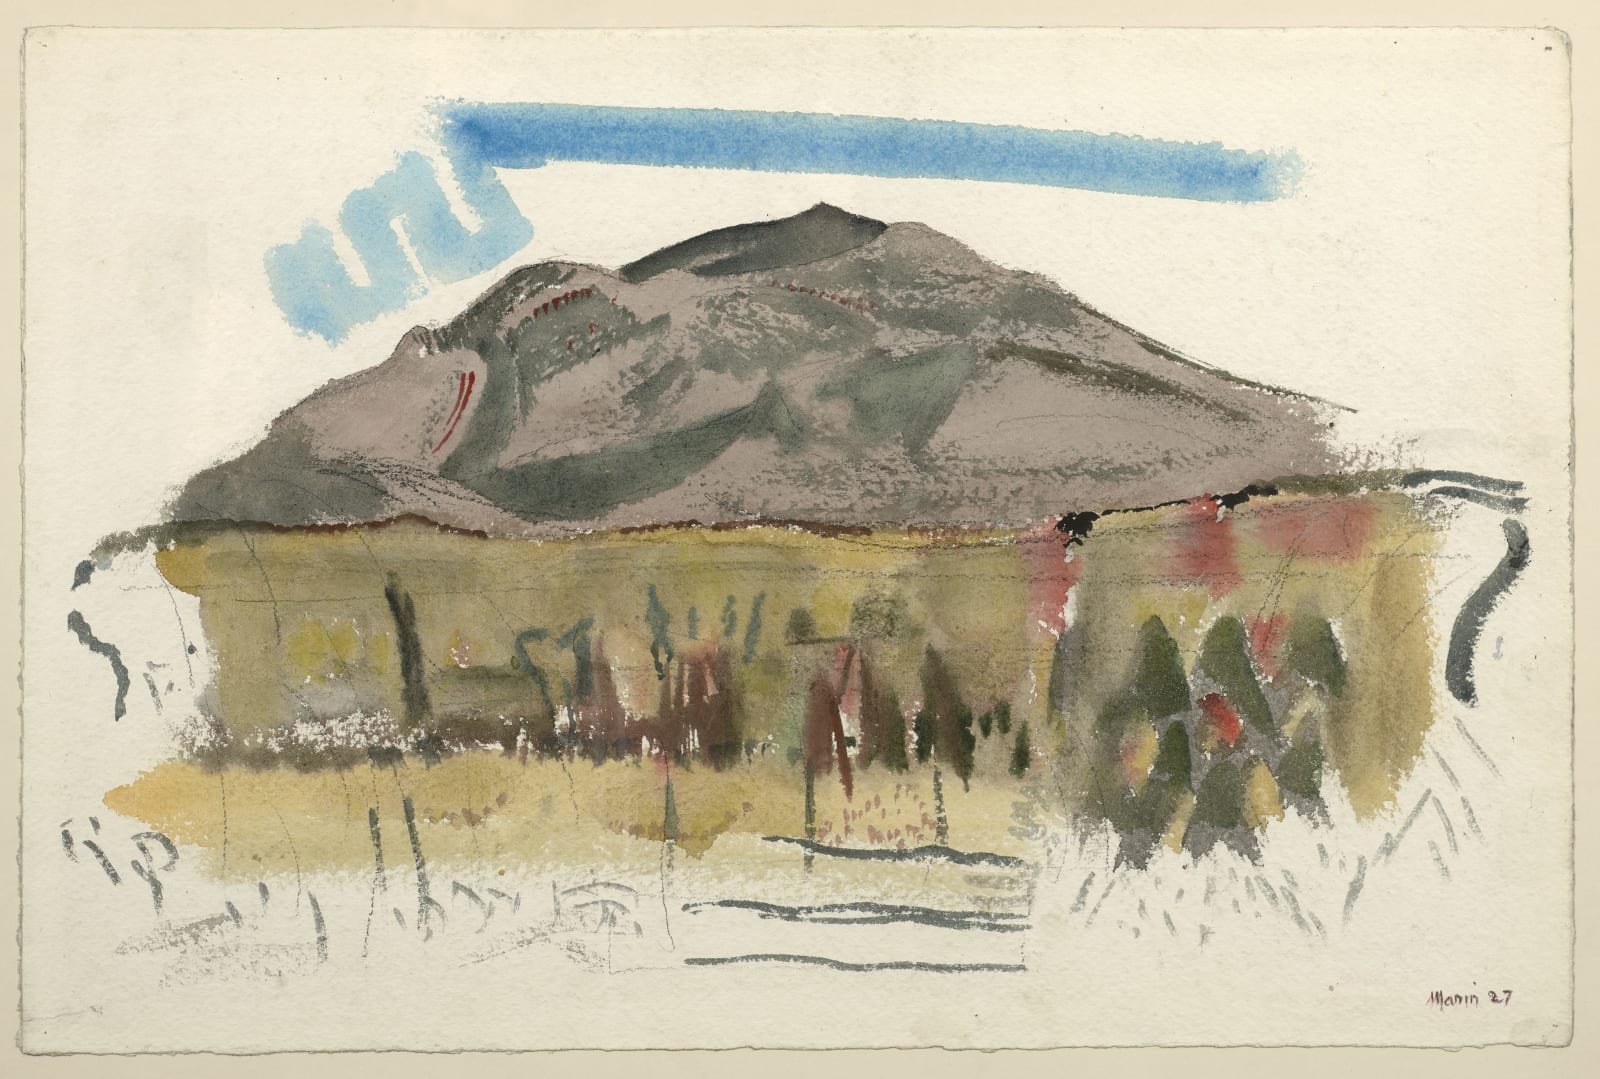 John Marin, White Mountain Country, Autumn No. 44, Franconia Range, The Mountain No. 1, 1927